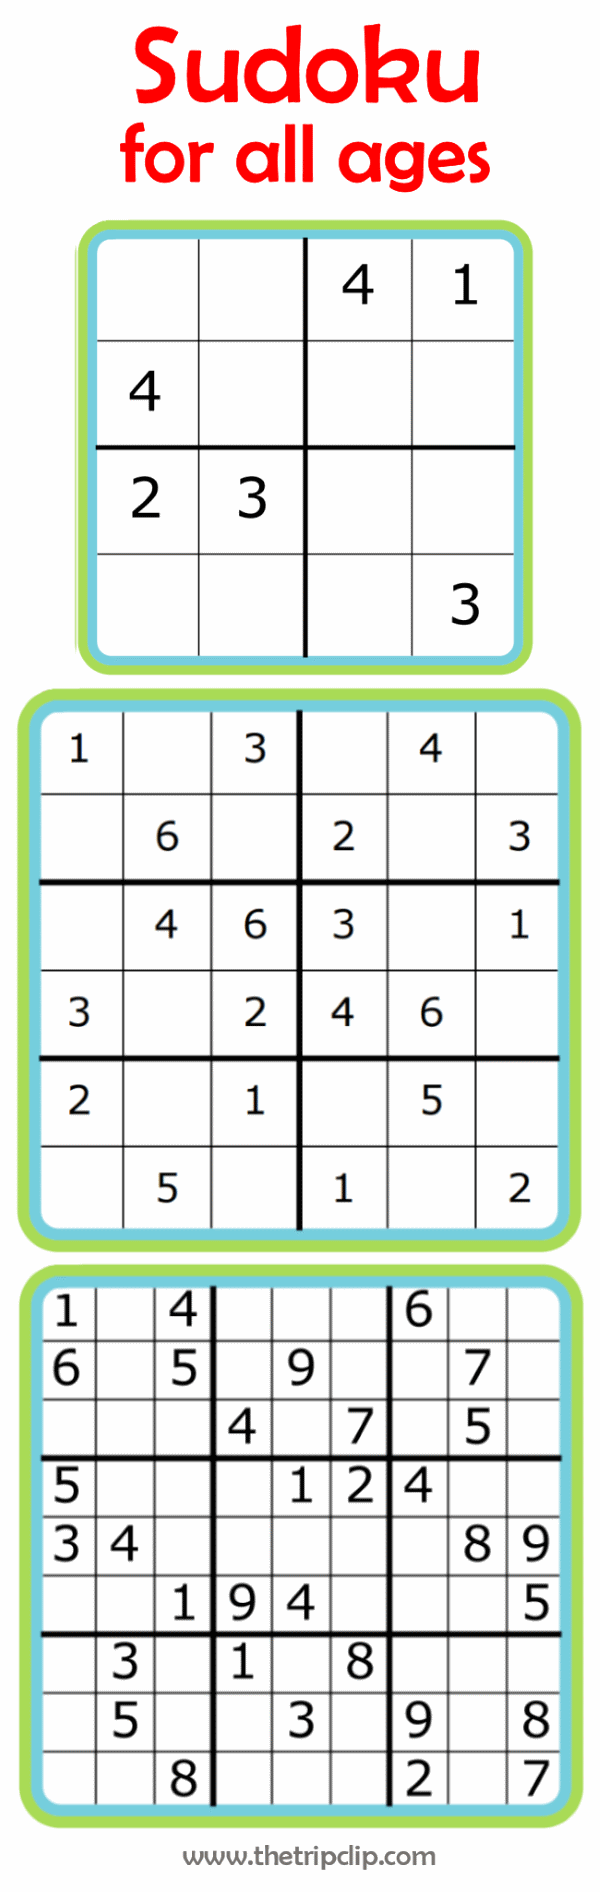 Easy sudoku for kids 4x4, 6x6, 9x9